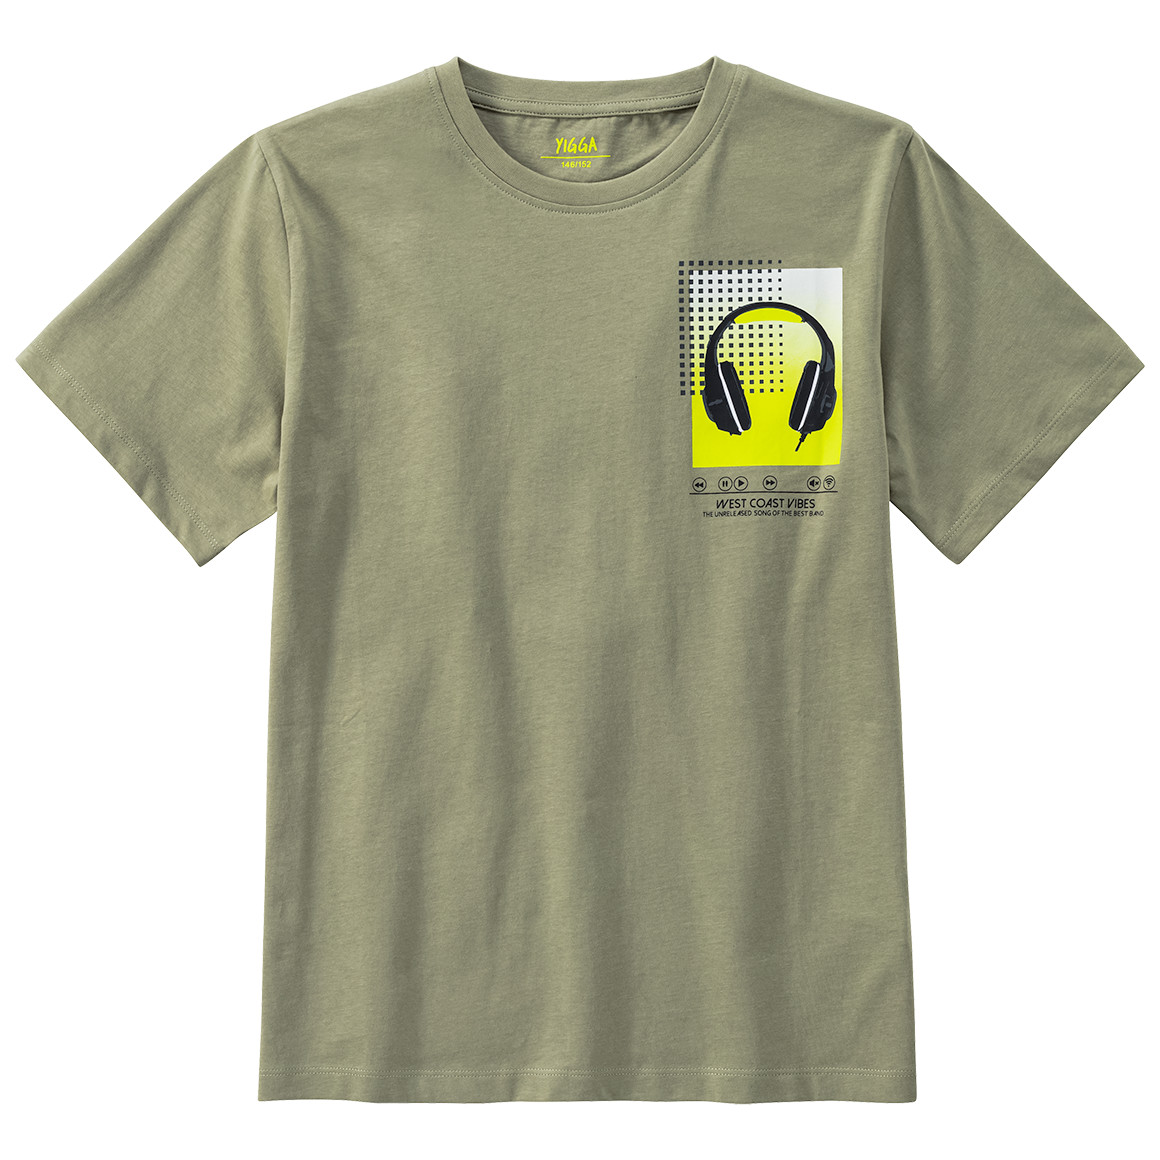 Jungen T-Shirt mit Kopfhörer-Motiv von Yigga